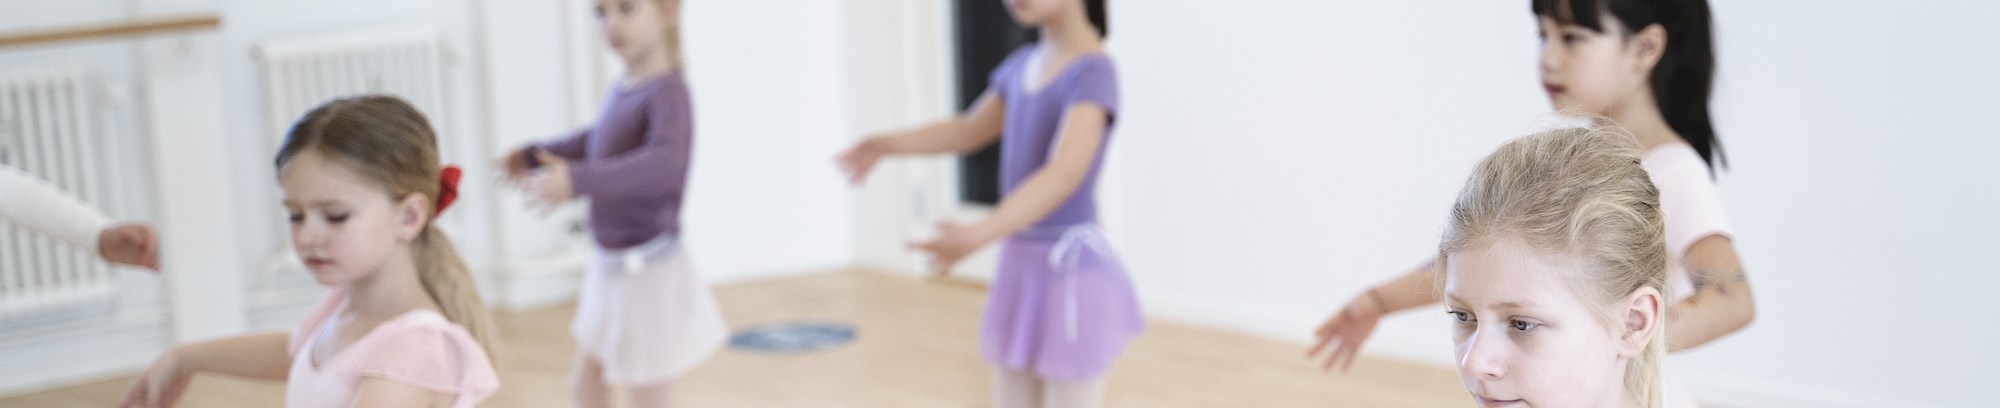 billede af 5 piger til balletundervisning